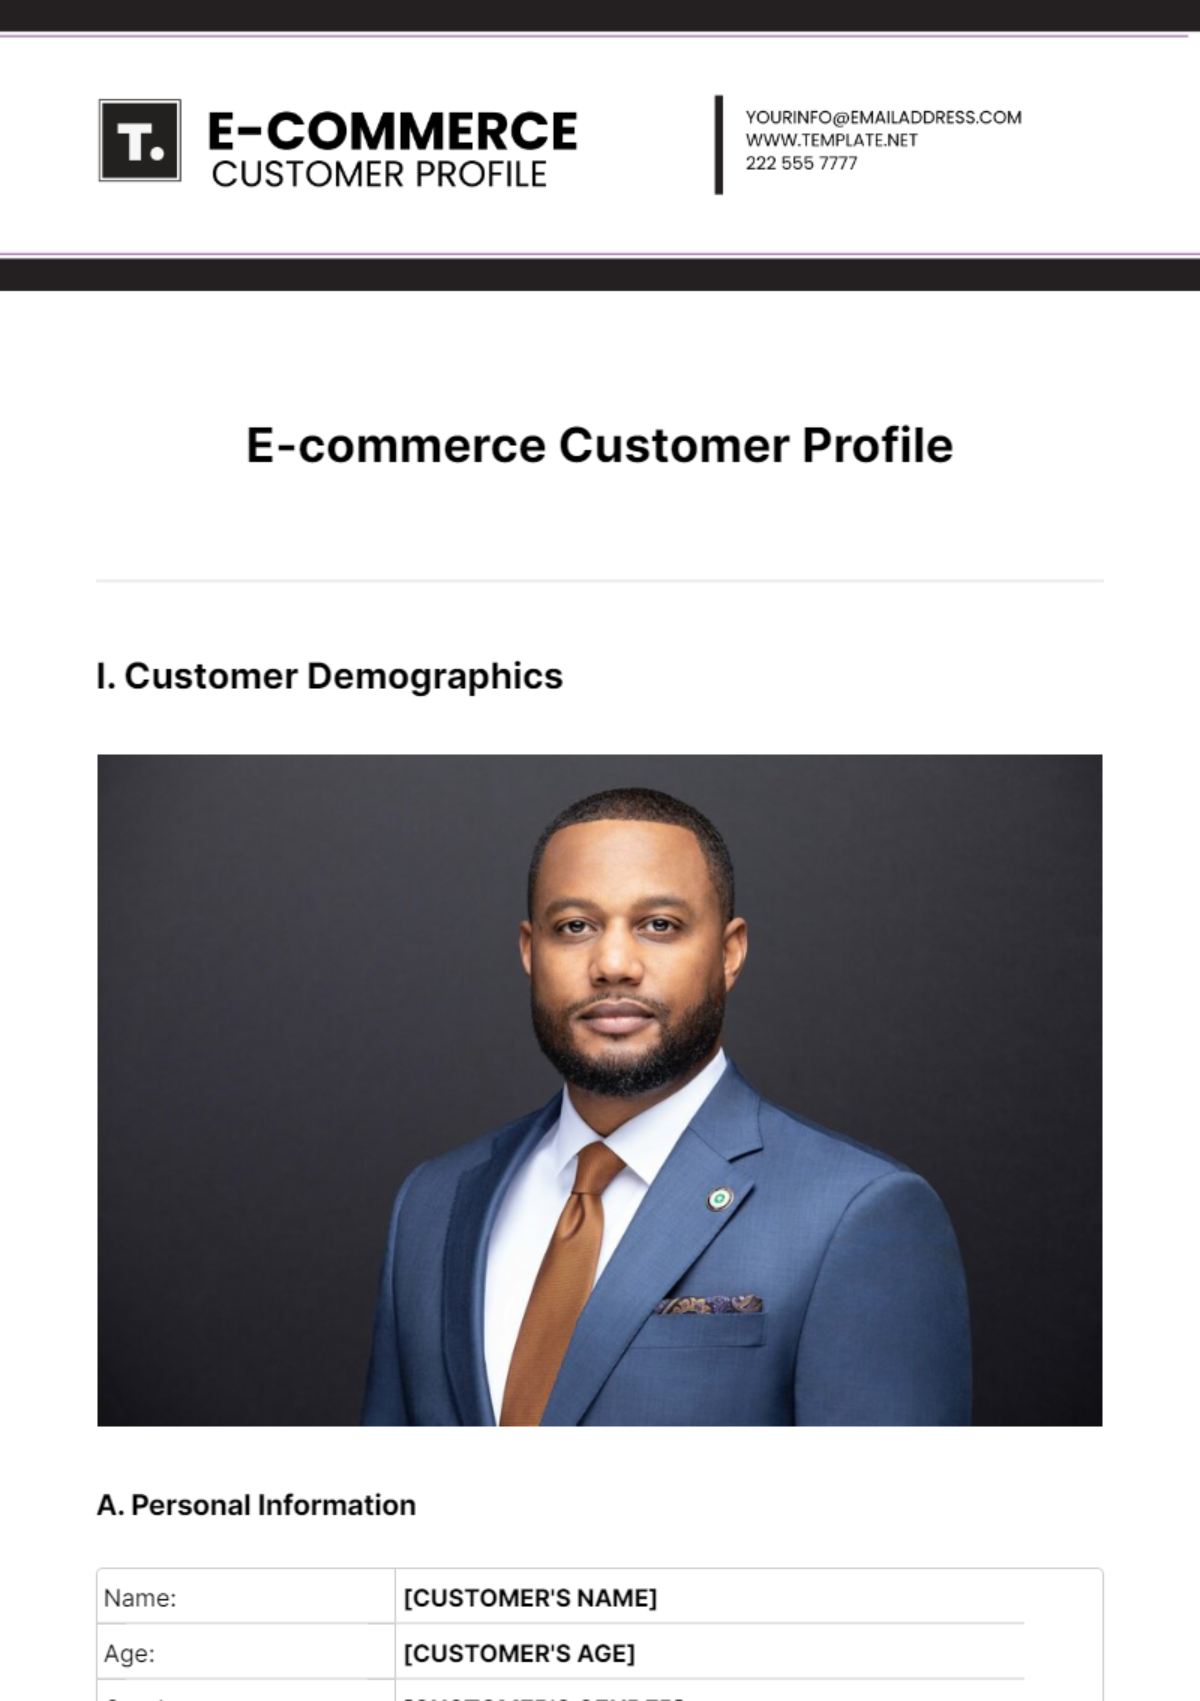 E-commerce Customer Profile Template